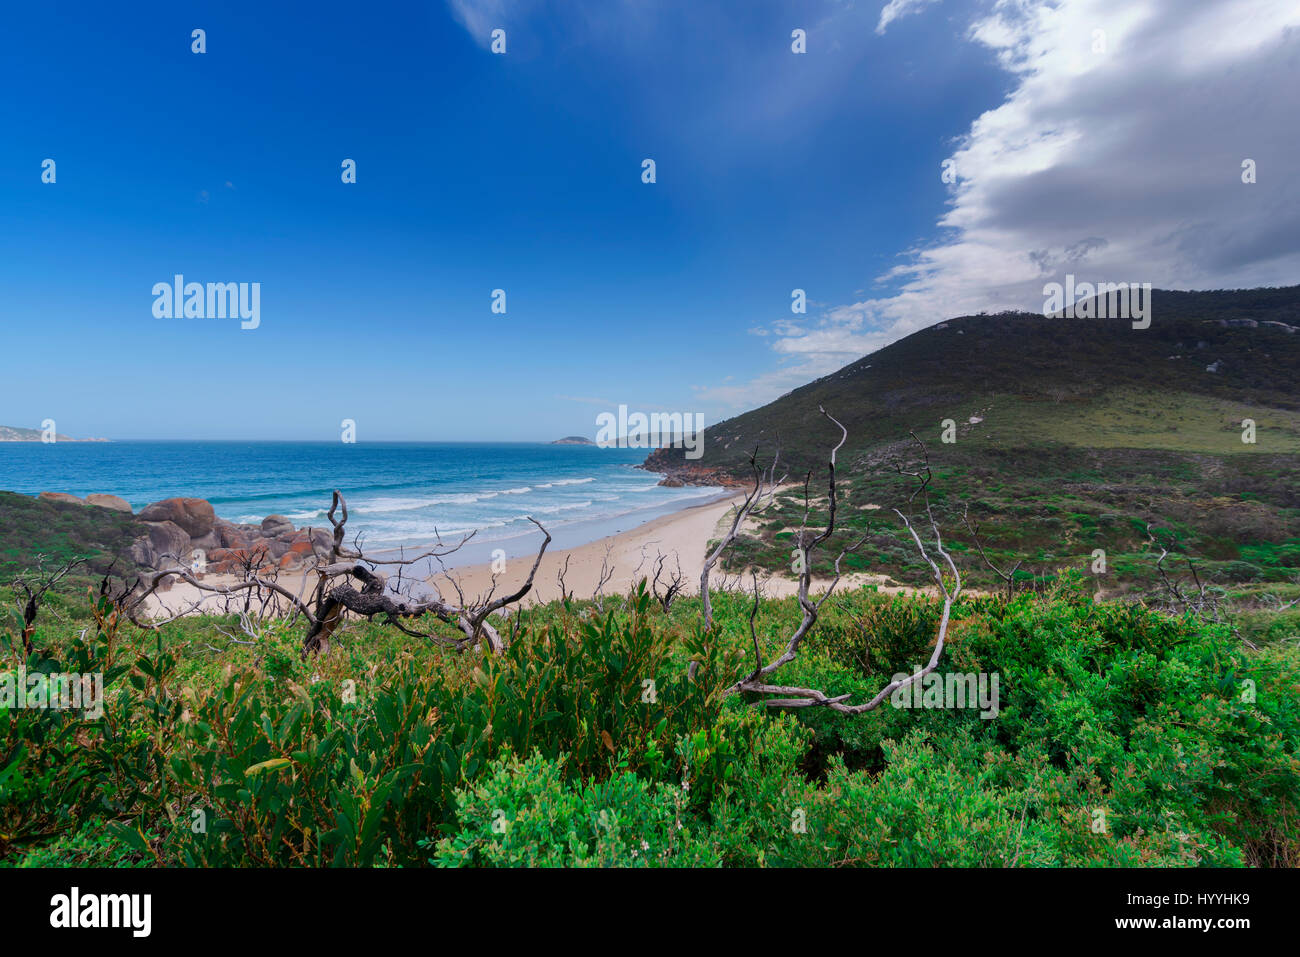 Una bella vista di un luminoso blu del mare in lontananza con il bianco delle onde in rotolamento verso una spiaggia di sabbia bianca con una piccola area boschiva. Foto Stock